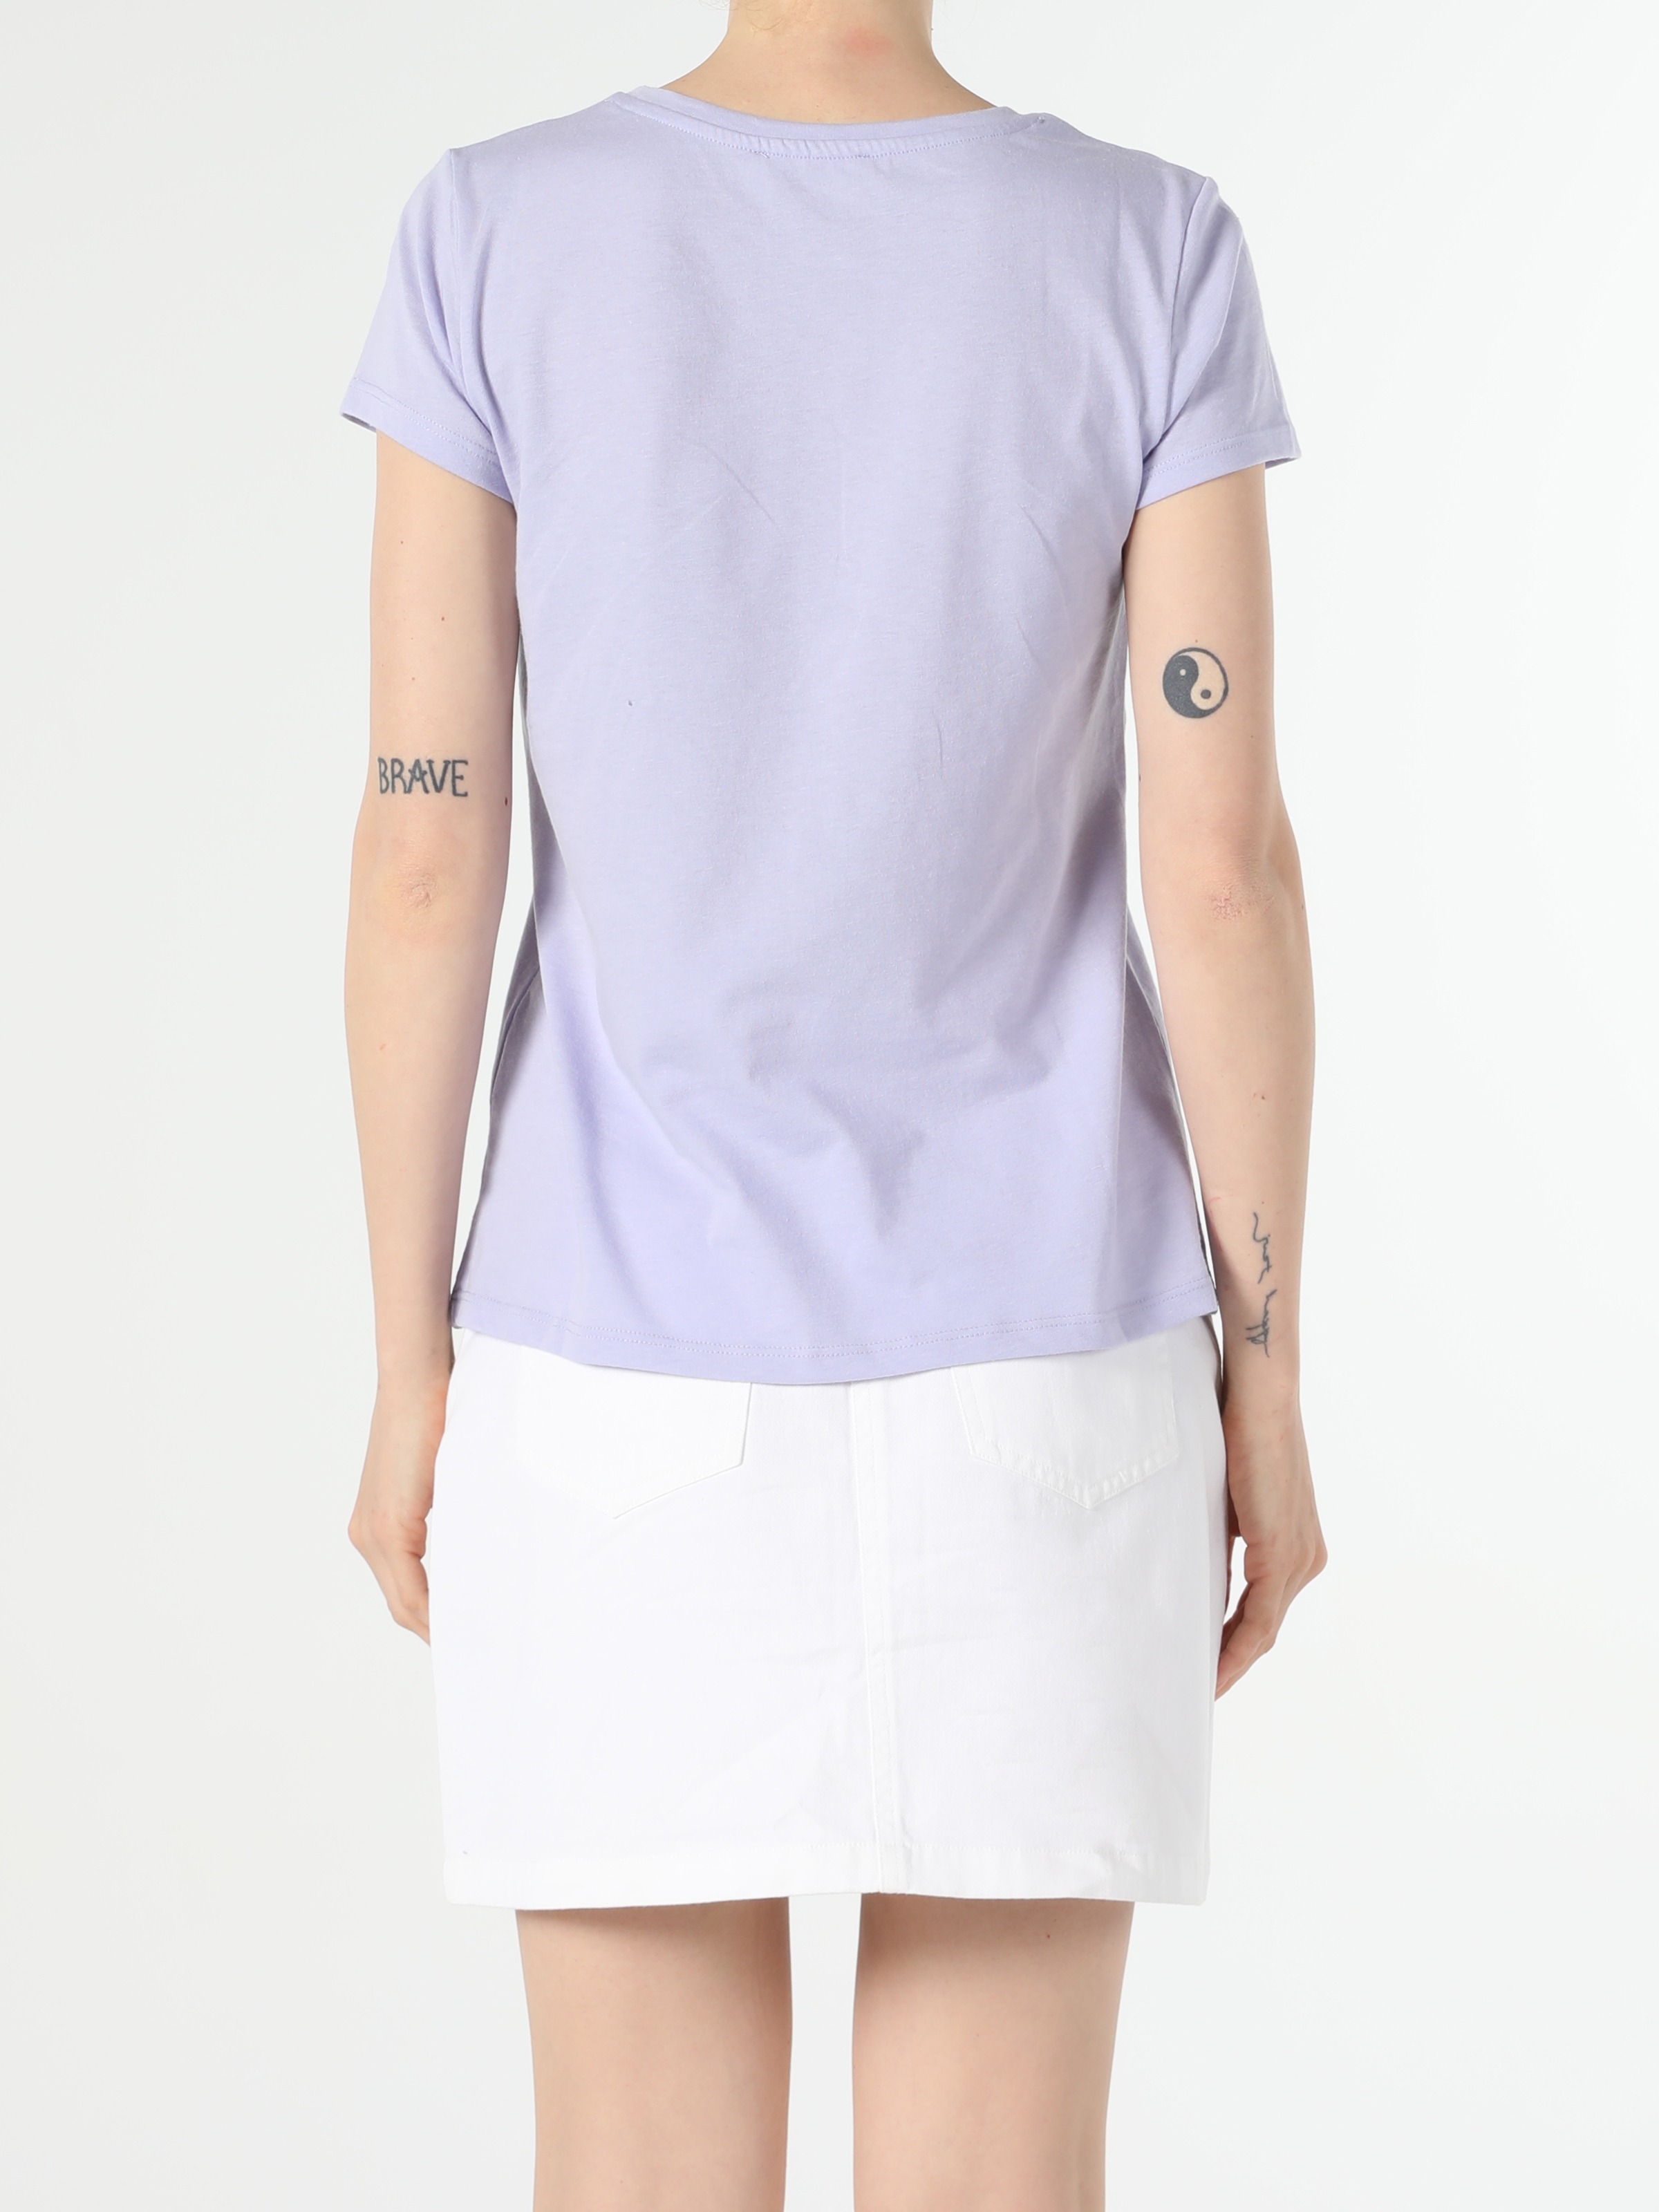 Colins Purple Woman Short Sleeve Tshirt. 2